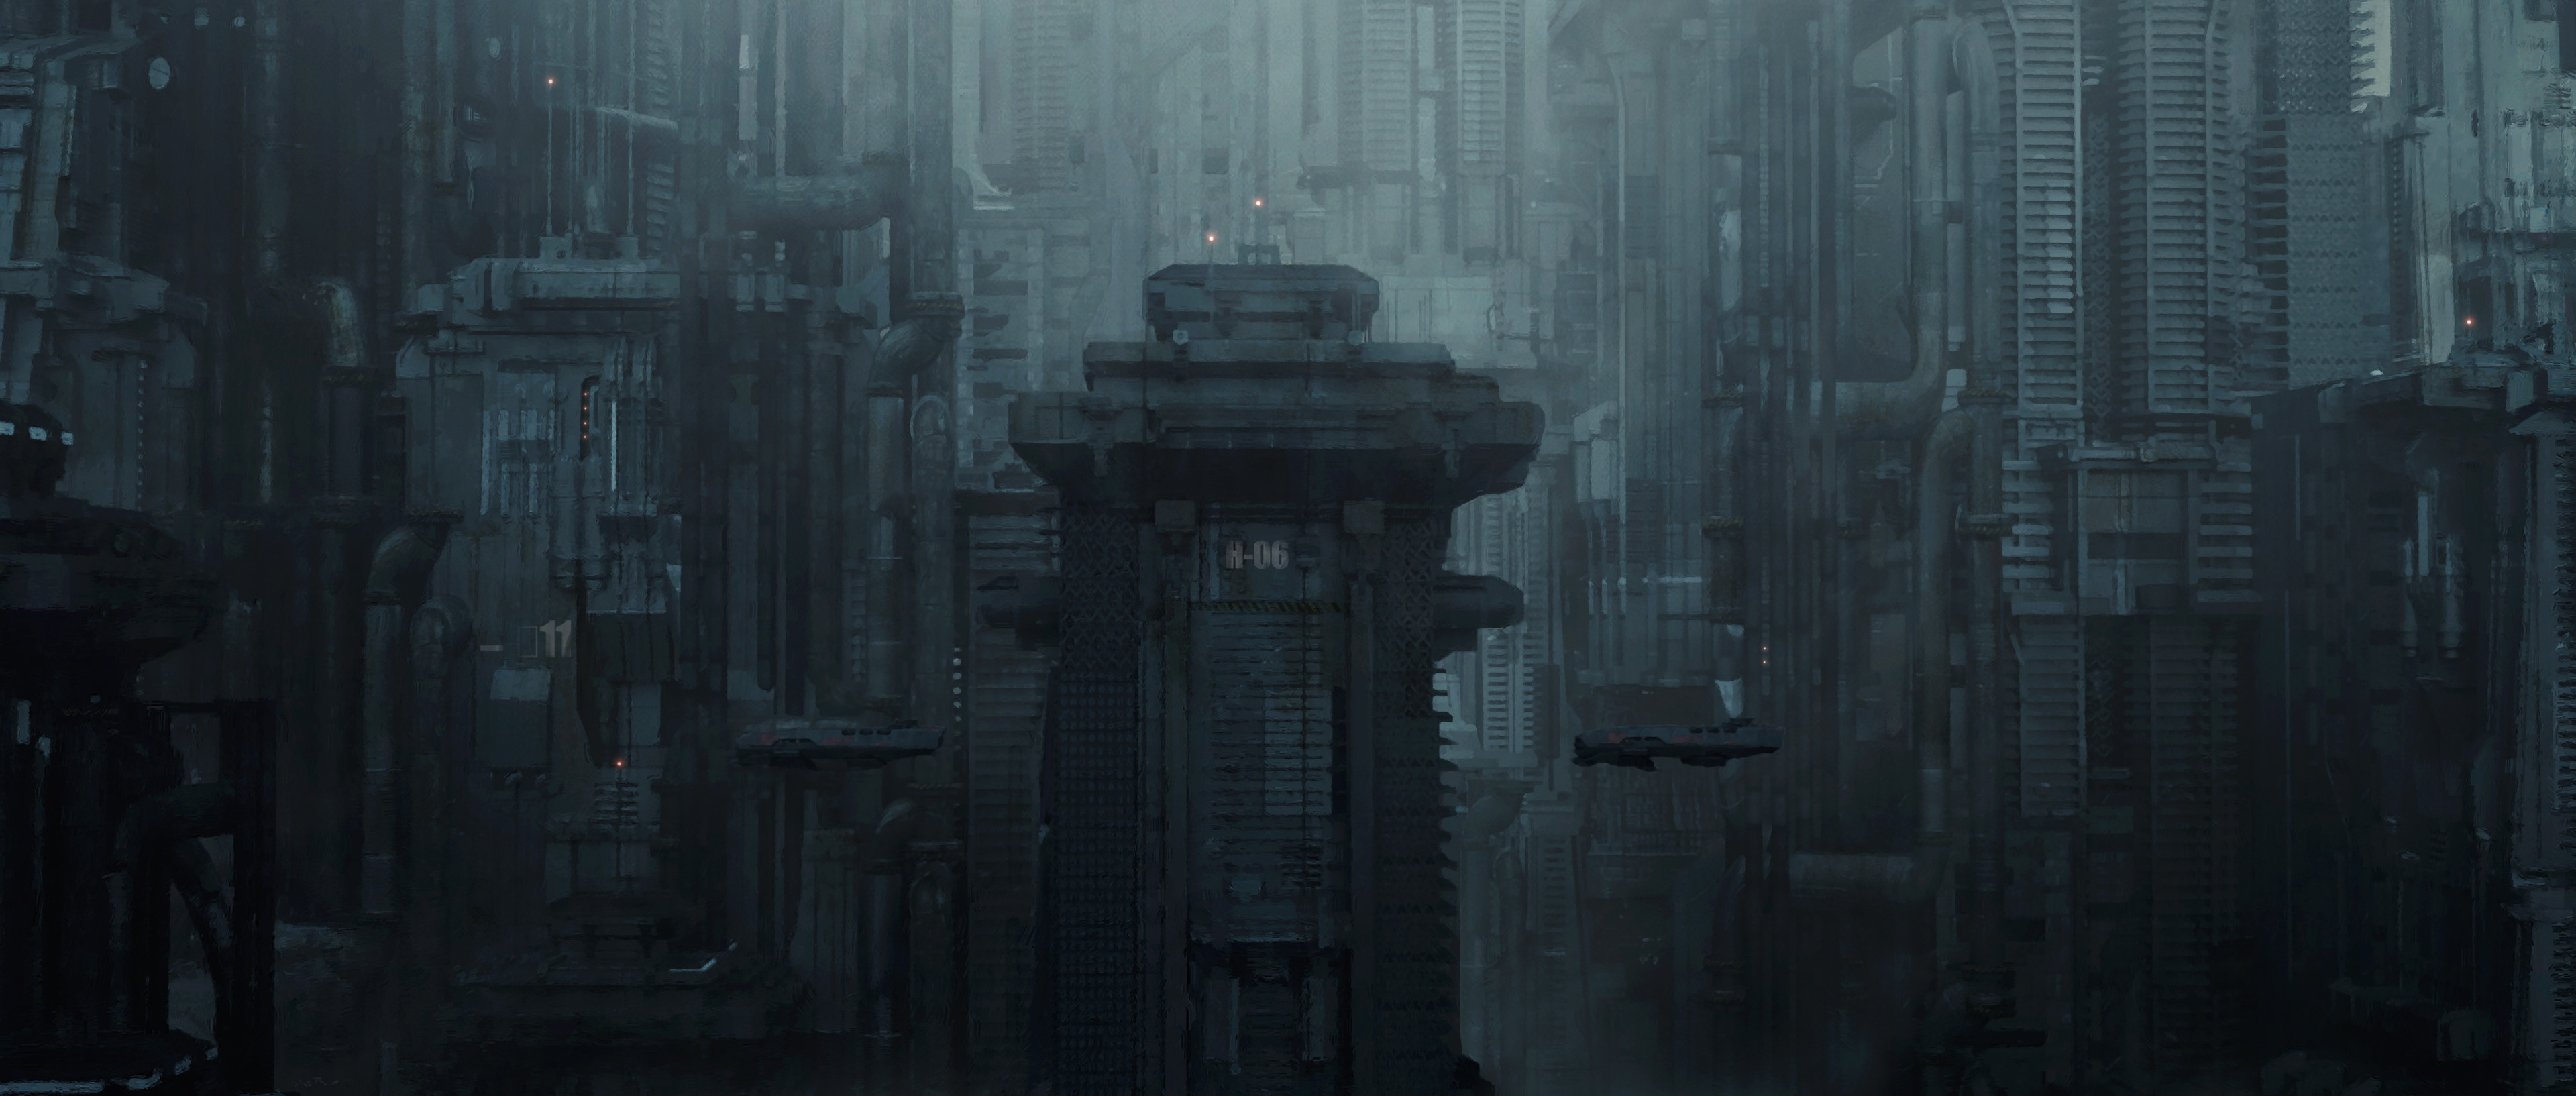 Arthur Yuan Dystopian Futuristic Dark Cityscape Artwork 3840x1634